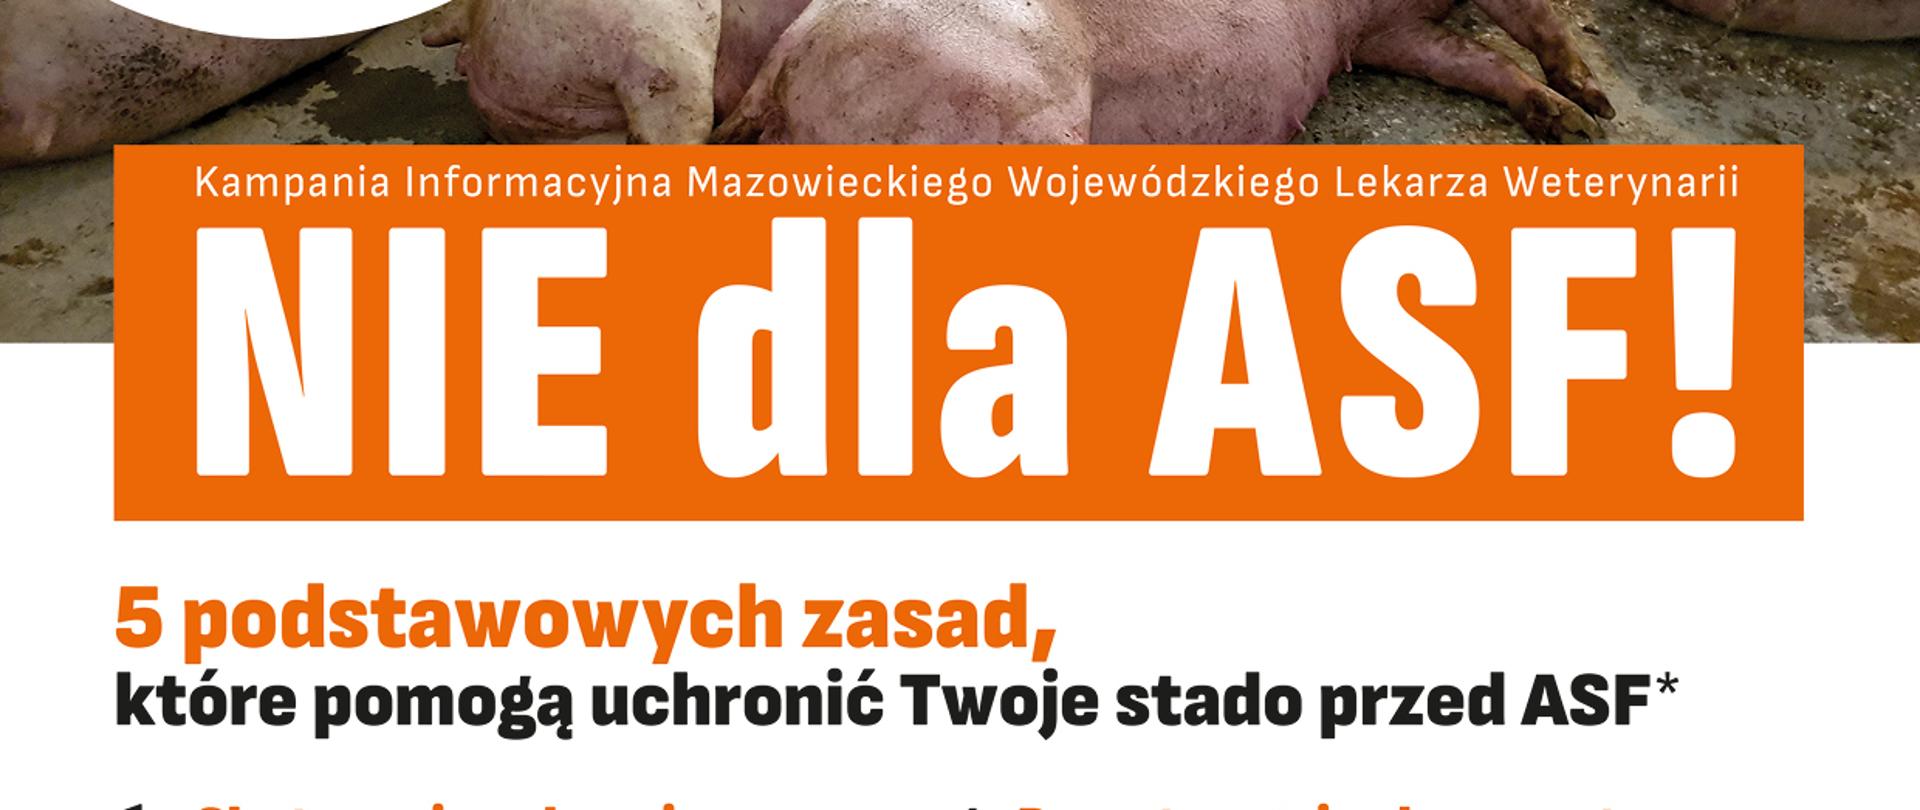 Zdjęcie leżących świń, obok logo w postaci miecza z dwoma zielonymi wężami, wokół nich półobręcz z liści. Pod spodem napis Inspekcja weterynaryjna. Napis na pomarańczowym tle Kampania informacyjna Mazowieckiego Wojewódzkiego Lekarza Weterynarii. NIE dla ASF!